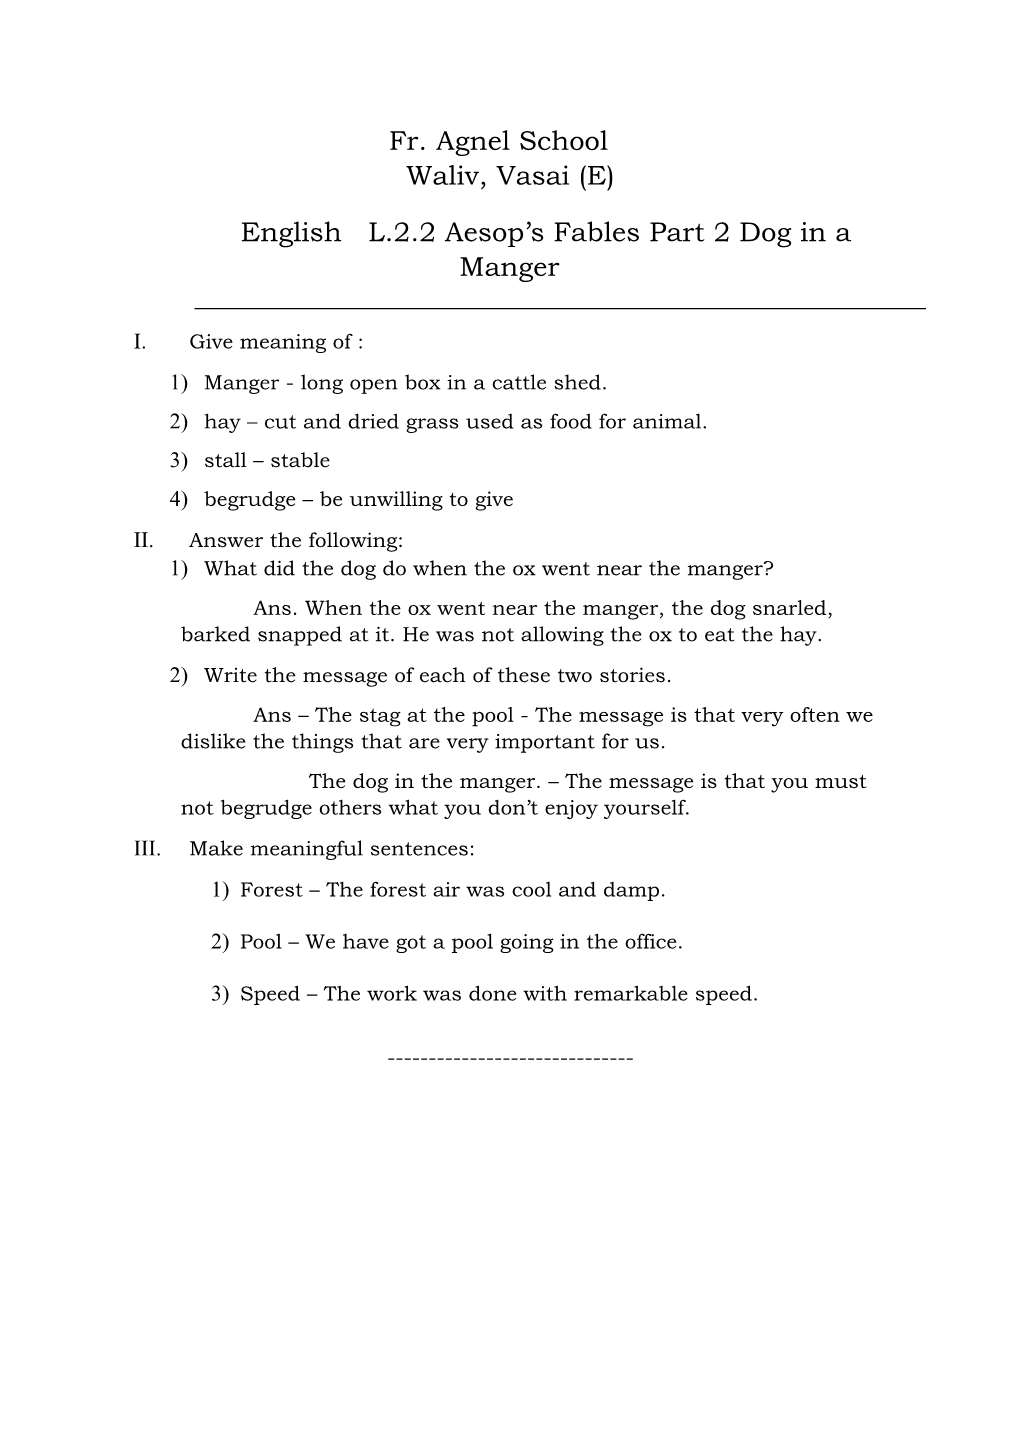 Fr. Agnel School Waliv, Vasai (E) English L.2.2 Aesop's Fables Part 2